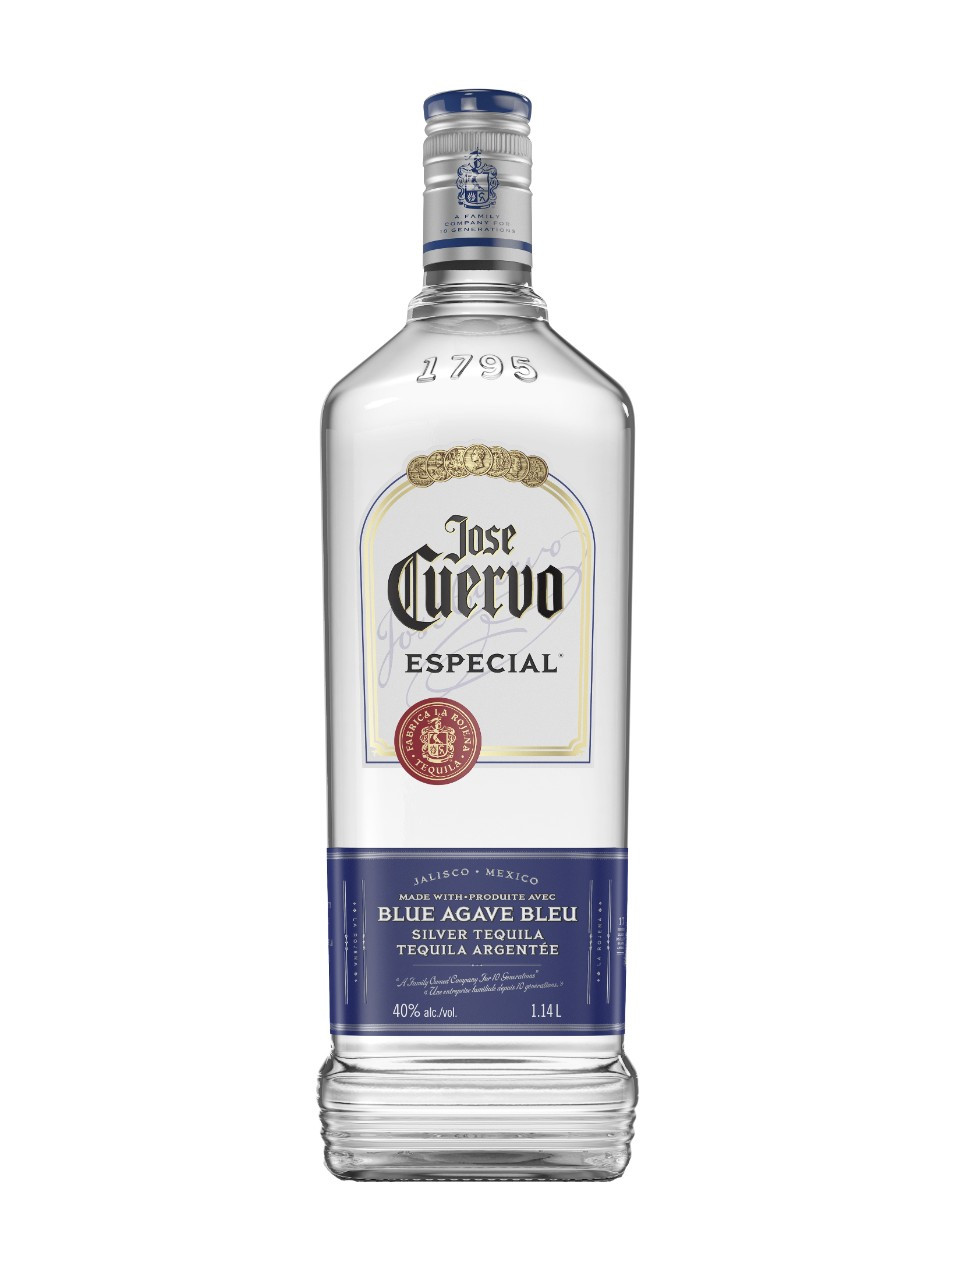 Jose cuervo especial silver tequila